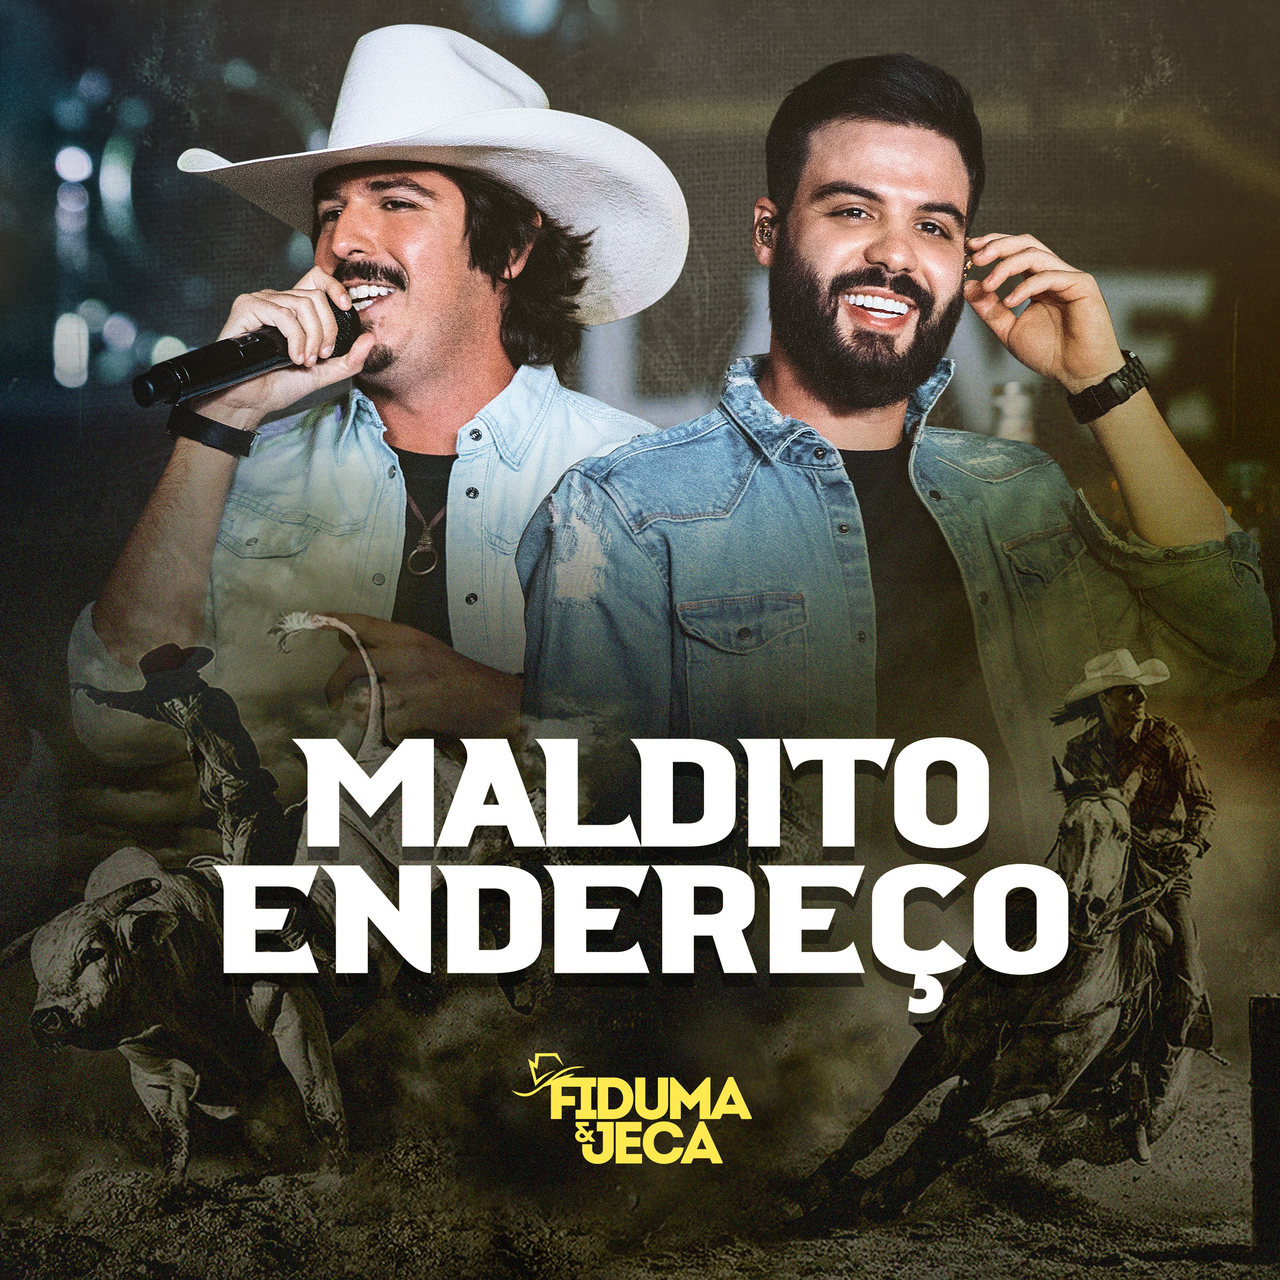 Fiduma e Jeca lançam "Maldito Endereço", música inédita gravada na última live da dupla 43